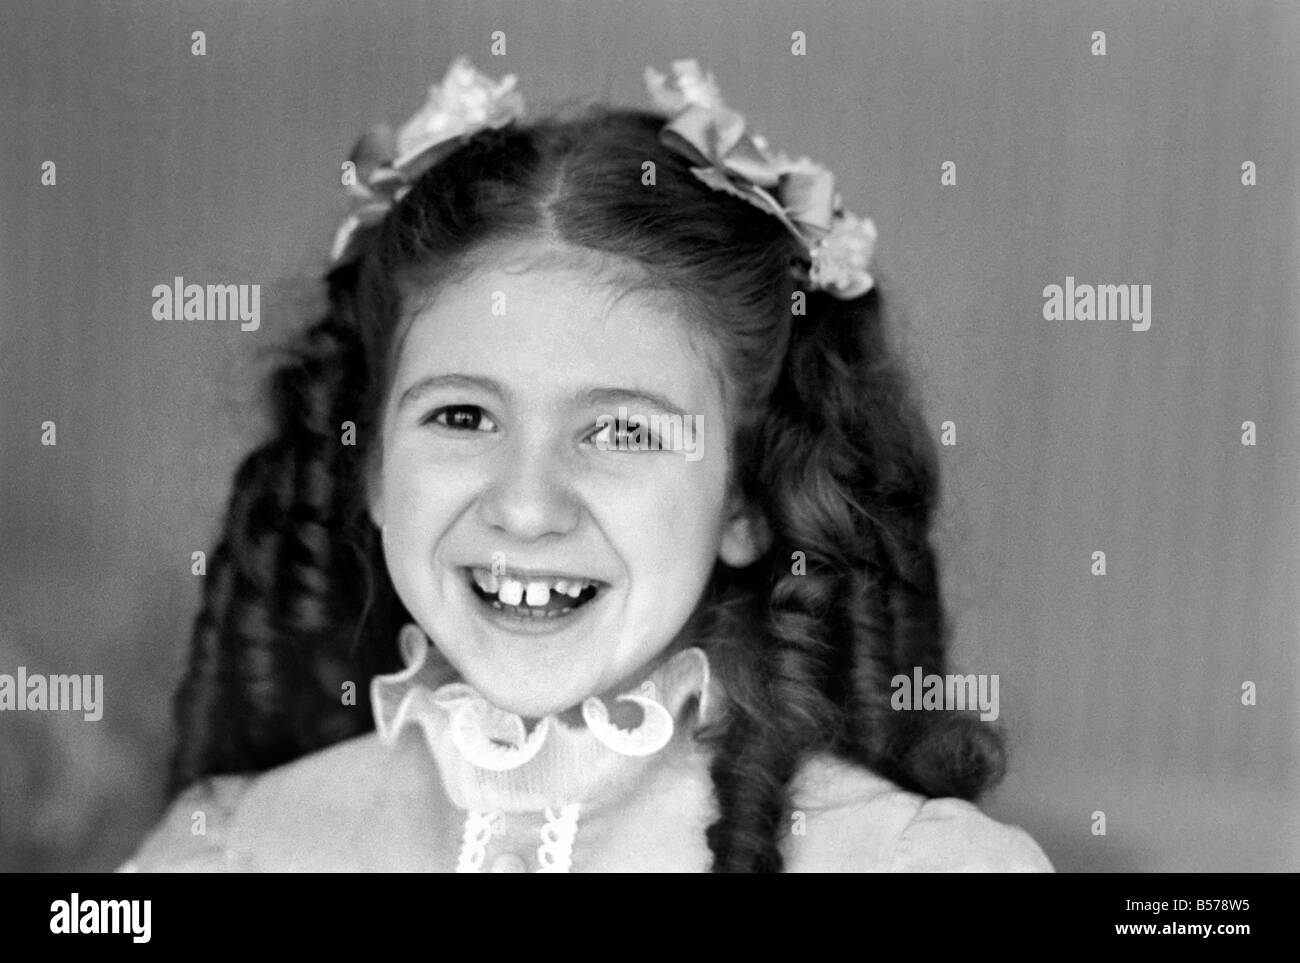 Bonnie langford child -Fotos und -Bildmaterial in hoher Auflösung – Alamy